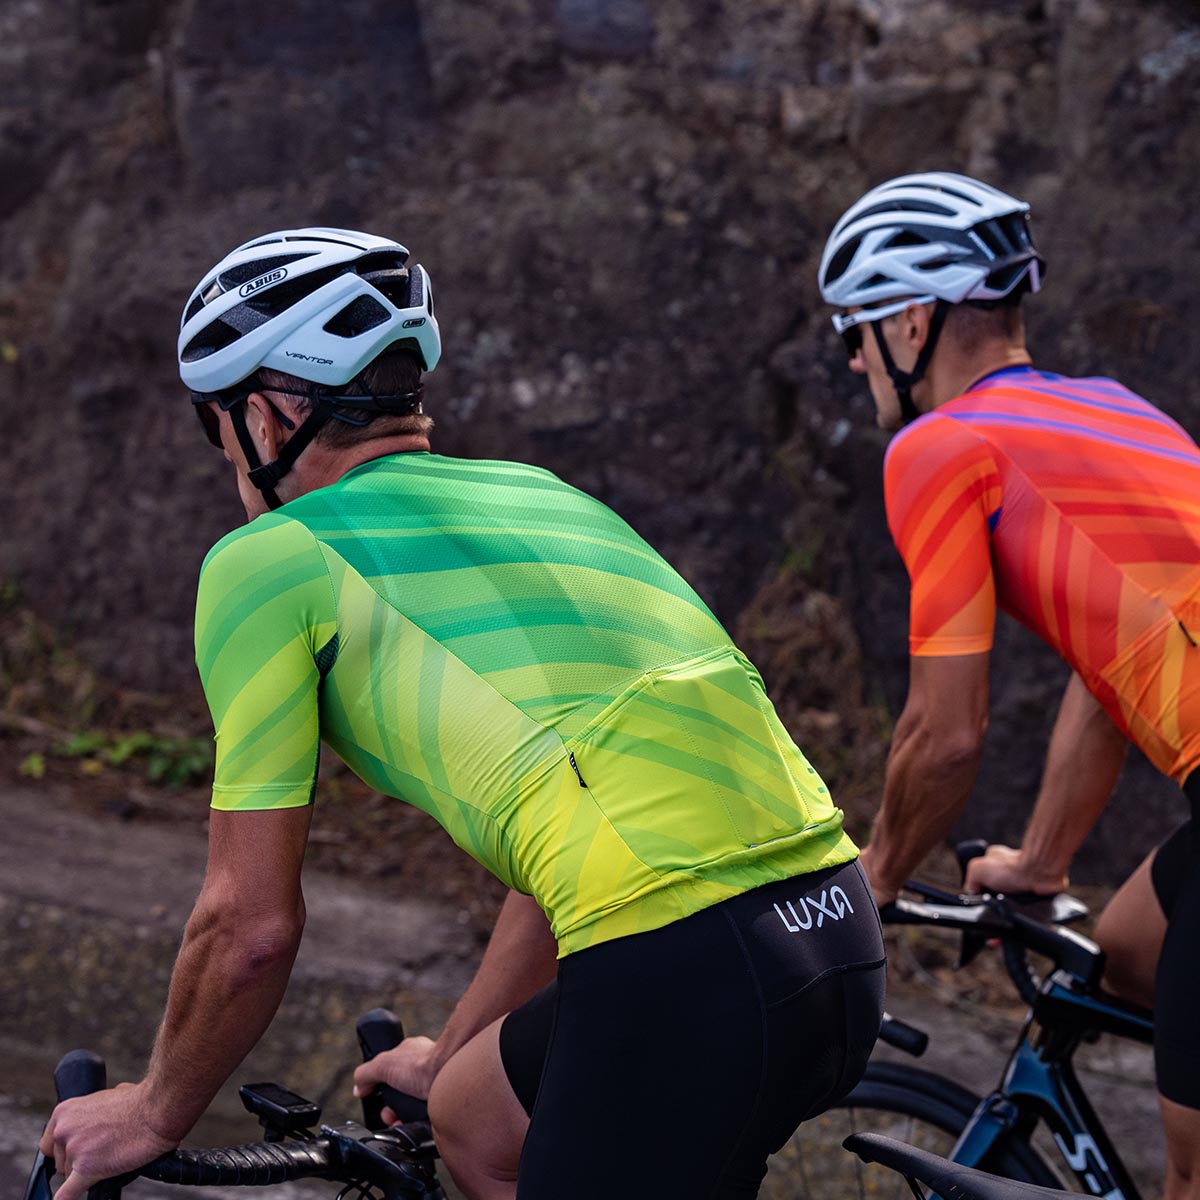 Zwei Radfahrer in hellorangefarbenen Luxa-Radbekleidungen